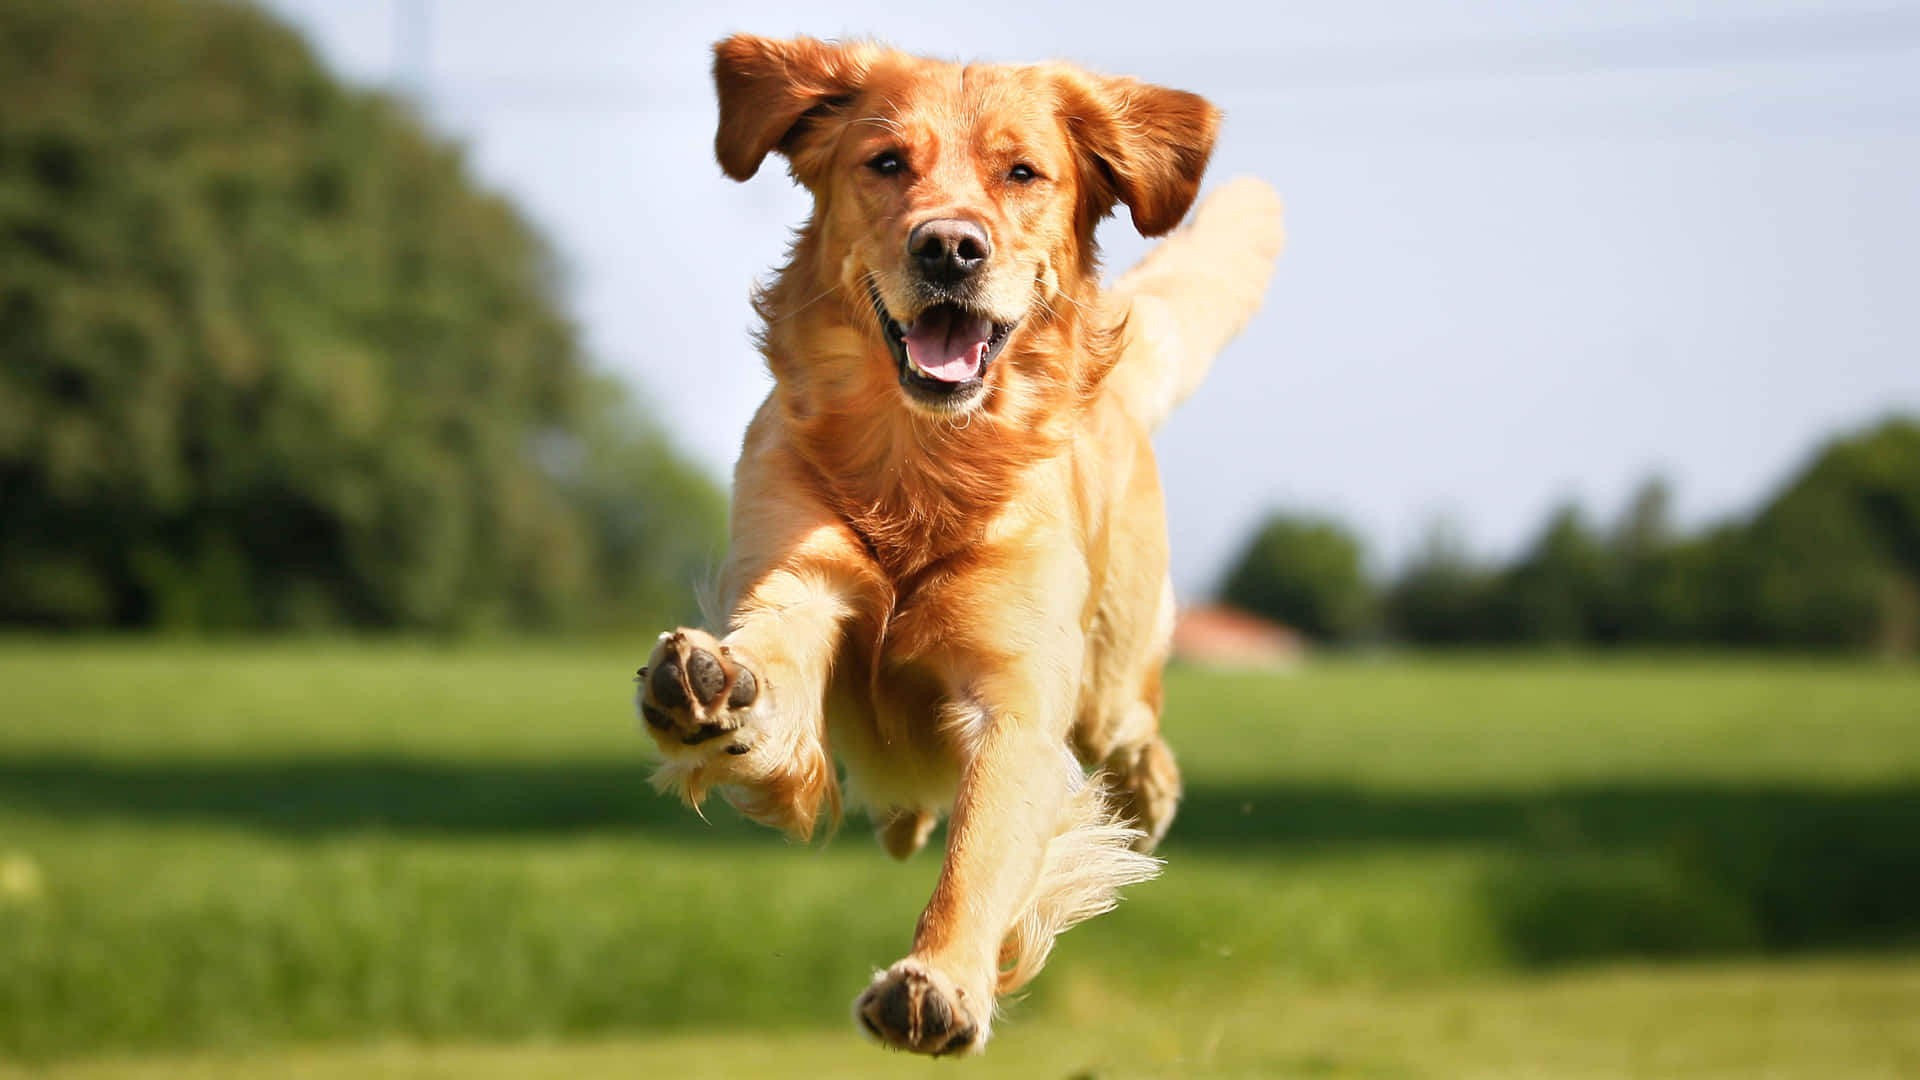 A happy golden retriever pup enjoying the summer sunshine.